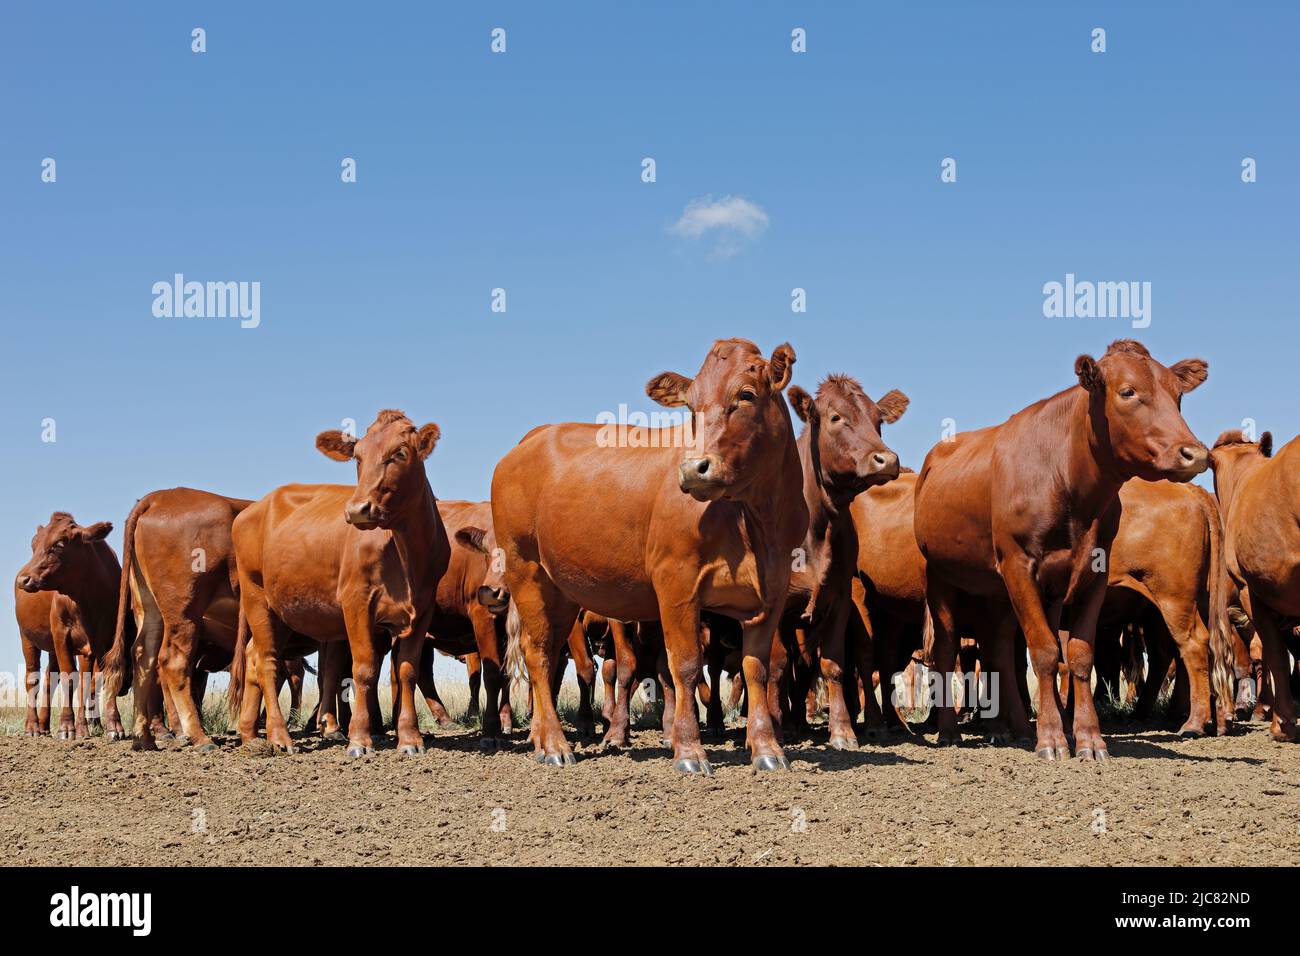 Pequeño rebaño de intervalo libre de ganado en una finca rural, Sudáfrica Foto de stock